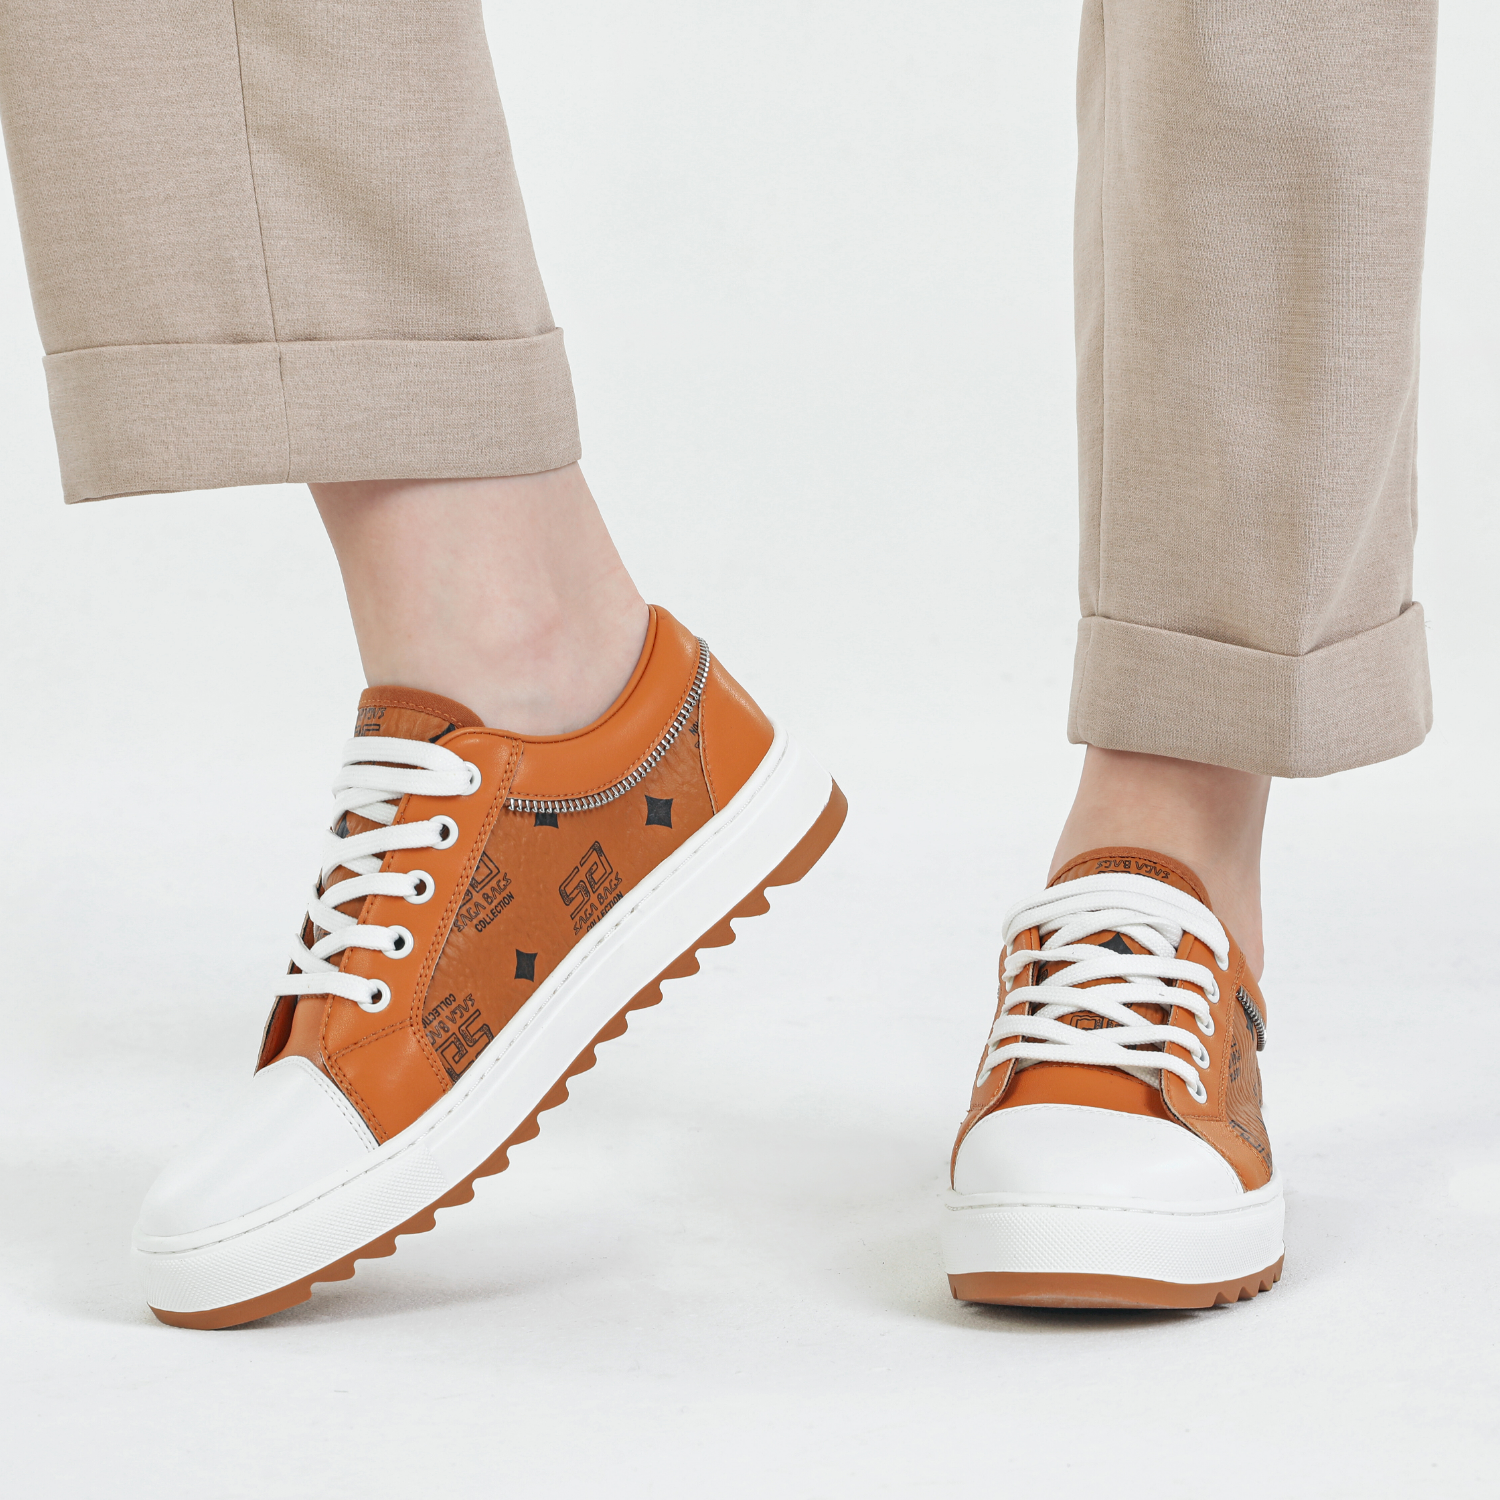 عرض جانبي لحذاء رياضي نسائي من الجلد البرتقالي مع نعل أبيض وتفاصيل سوداء من مجموعة ساغا